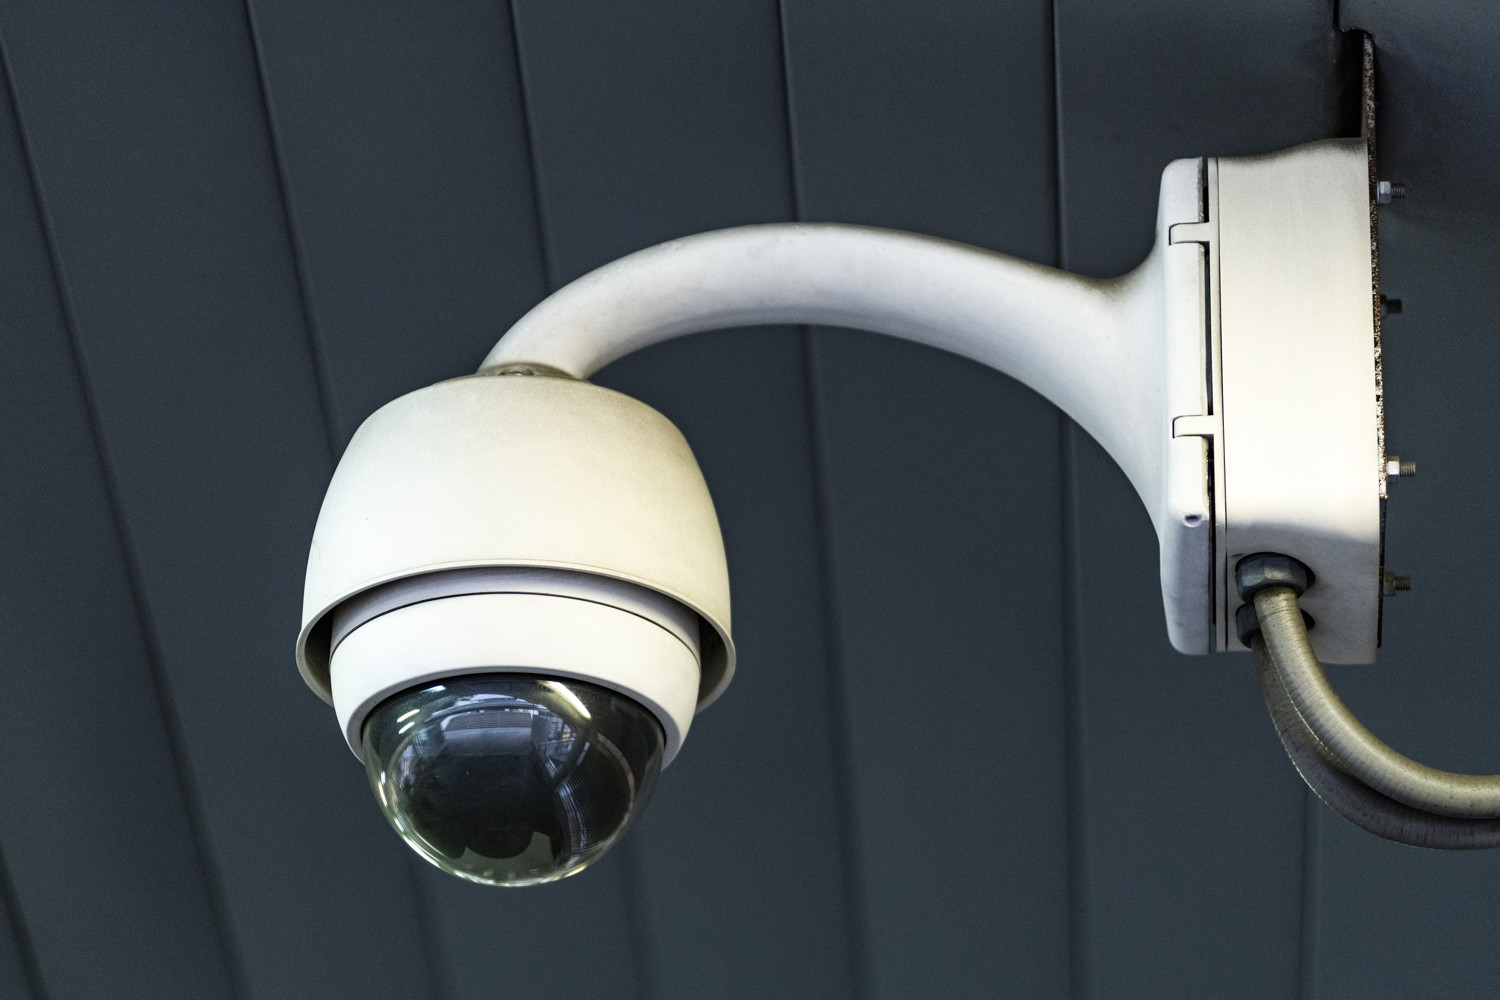 CCTV Installation Pricing in Barbados